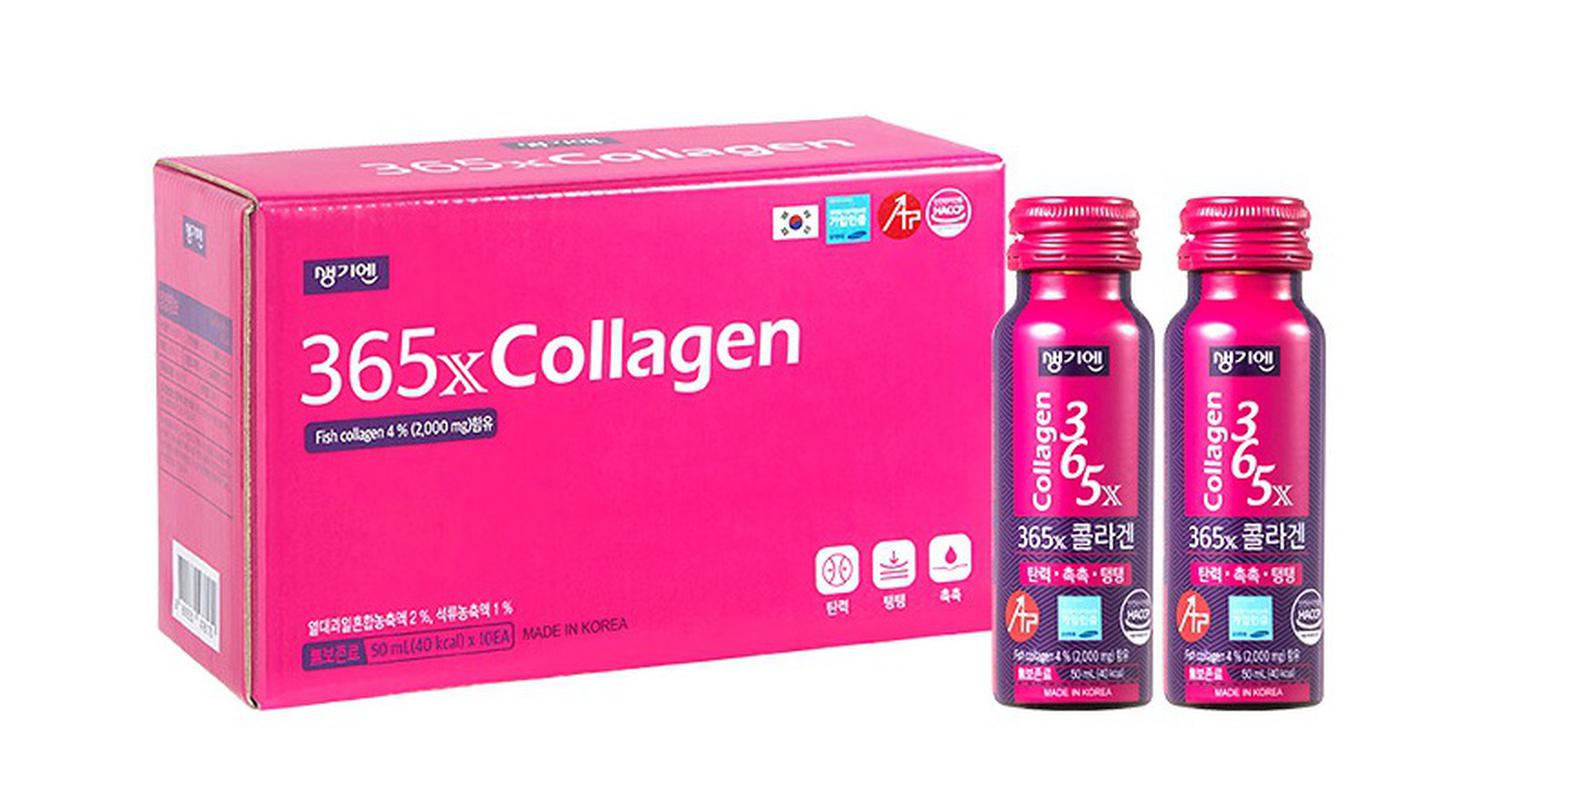 Hướng dẫn sử dụng collagen 365X để đạt hiệu quả tốt nhất 